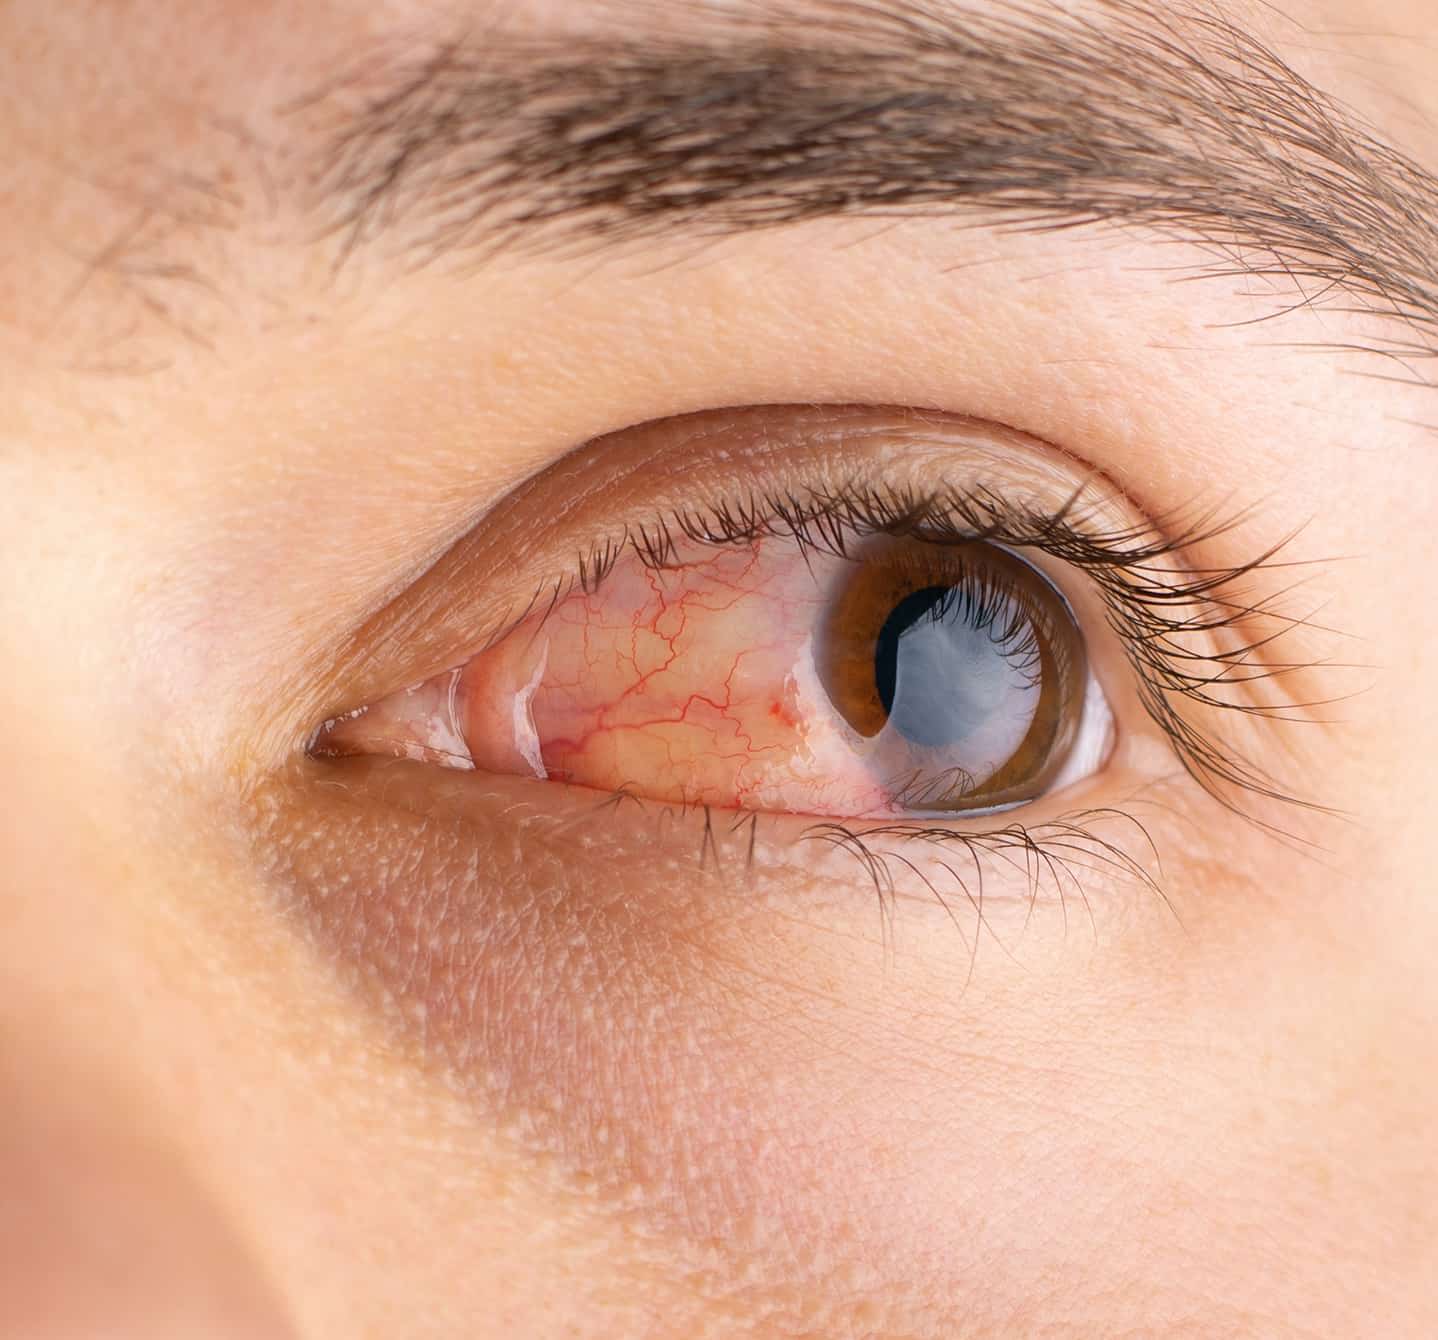 Nahaufnahme eines braunen Auges mit allergischer Bindehautentzündung; es tränt und ist gereizt.